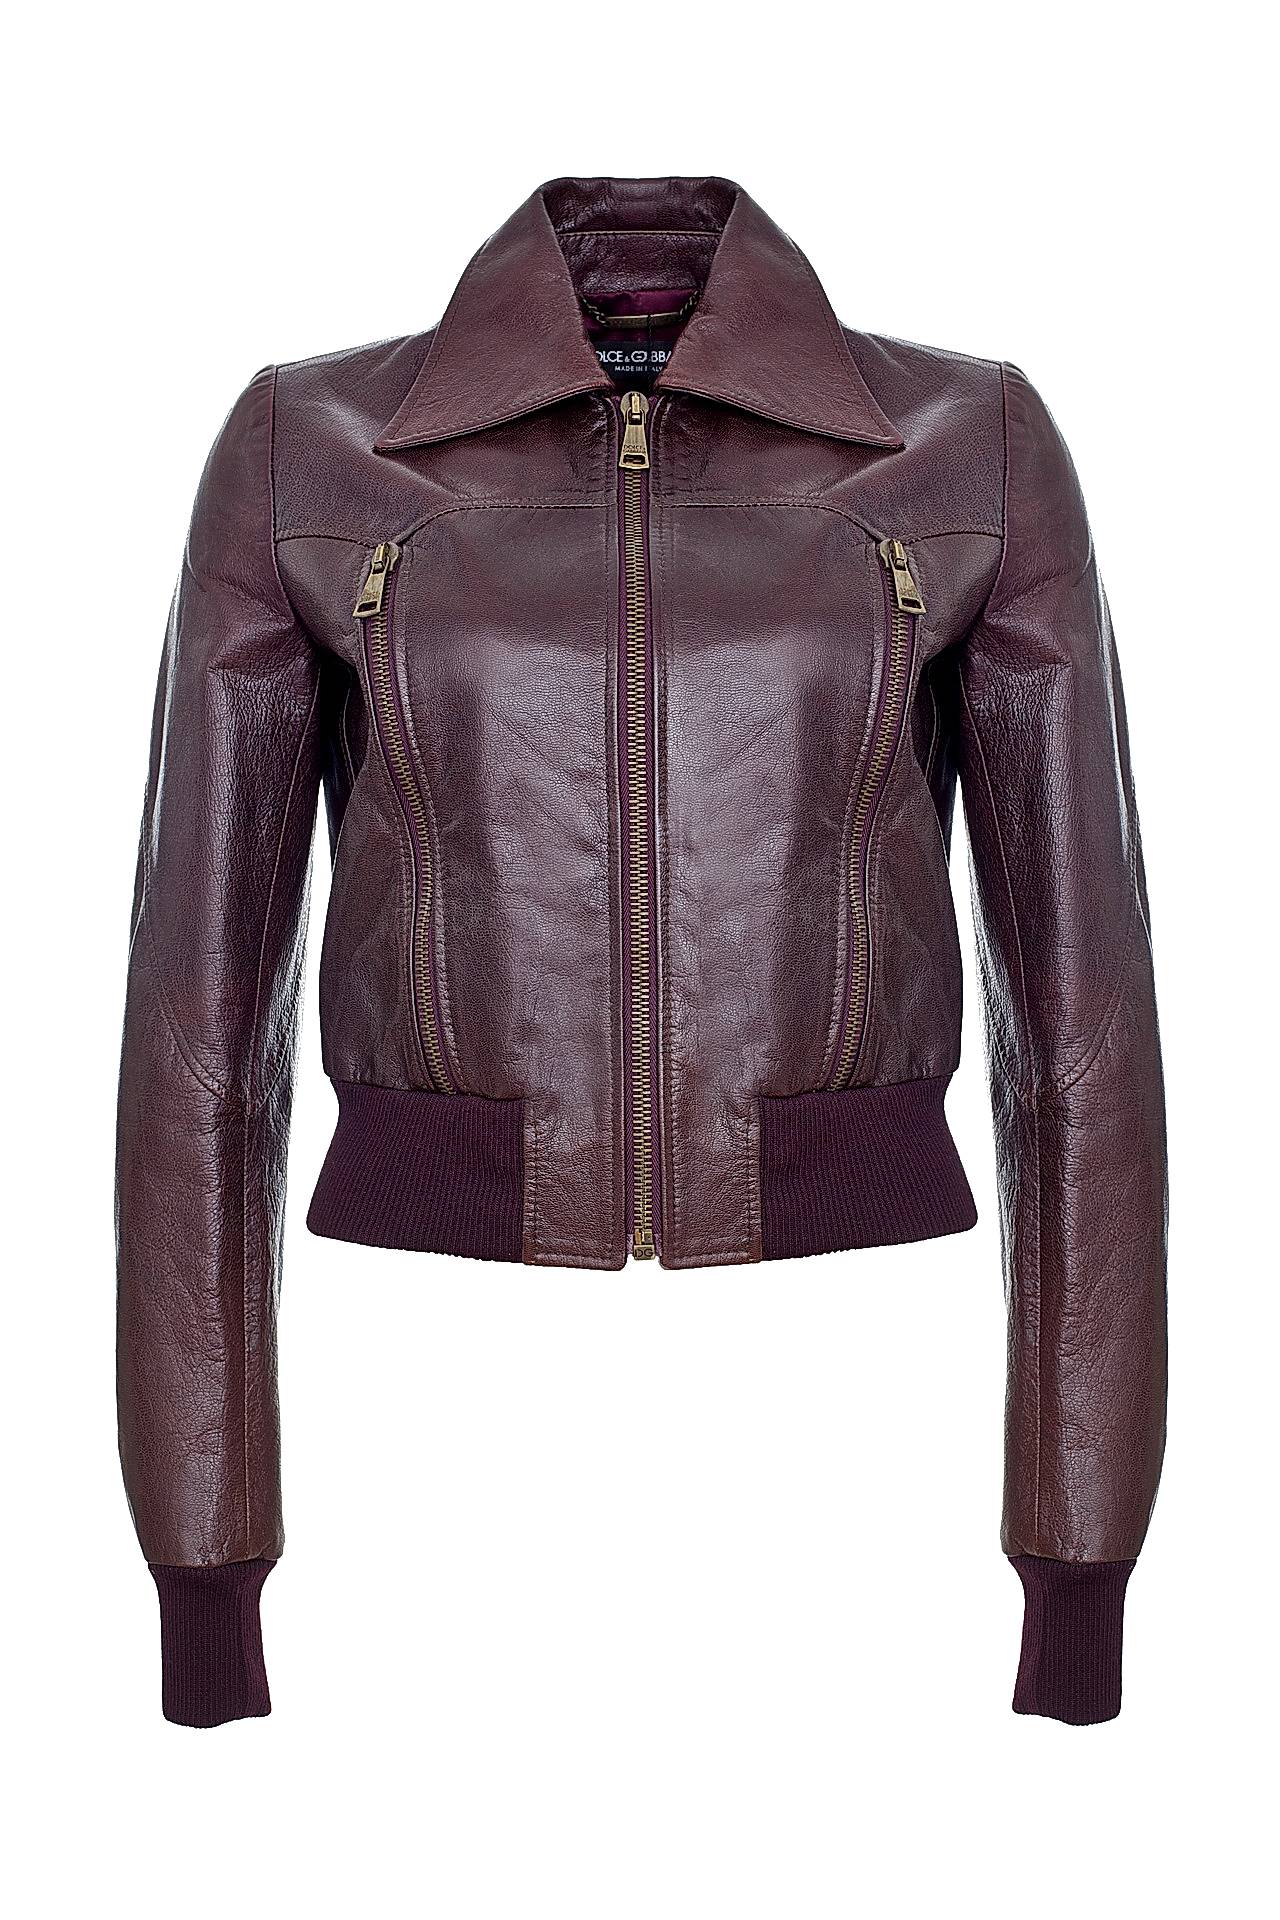 Chantal collection куртки кожаные